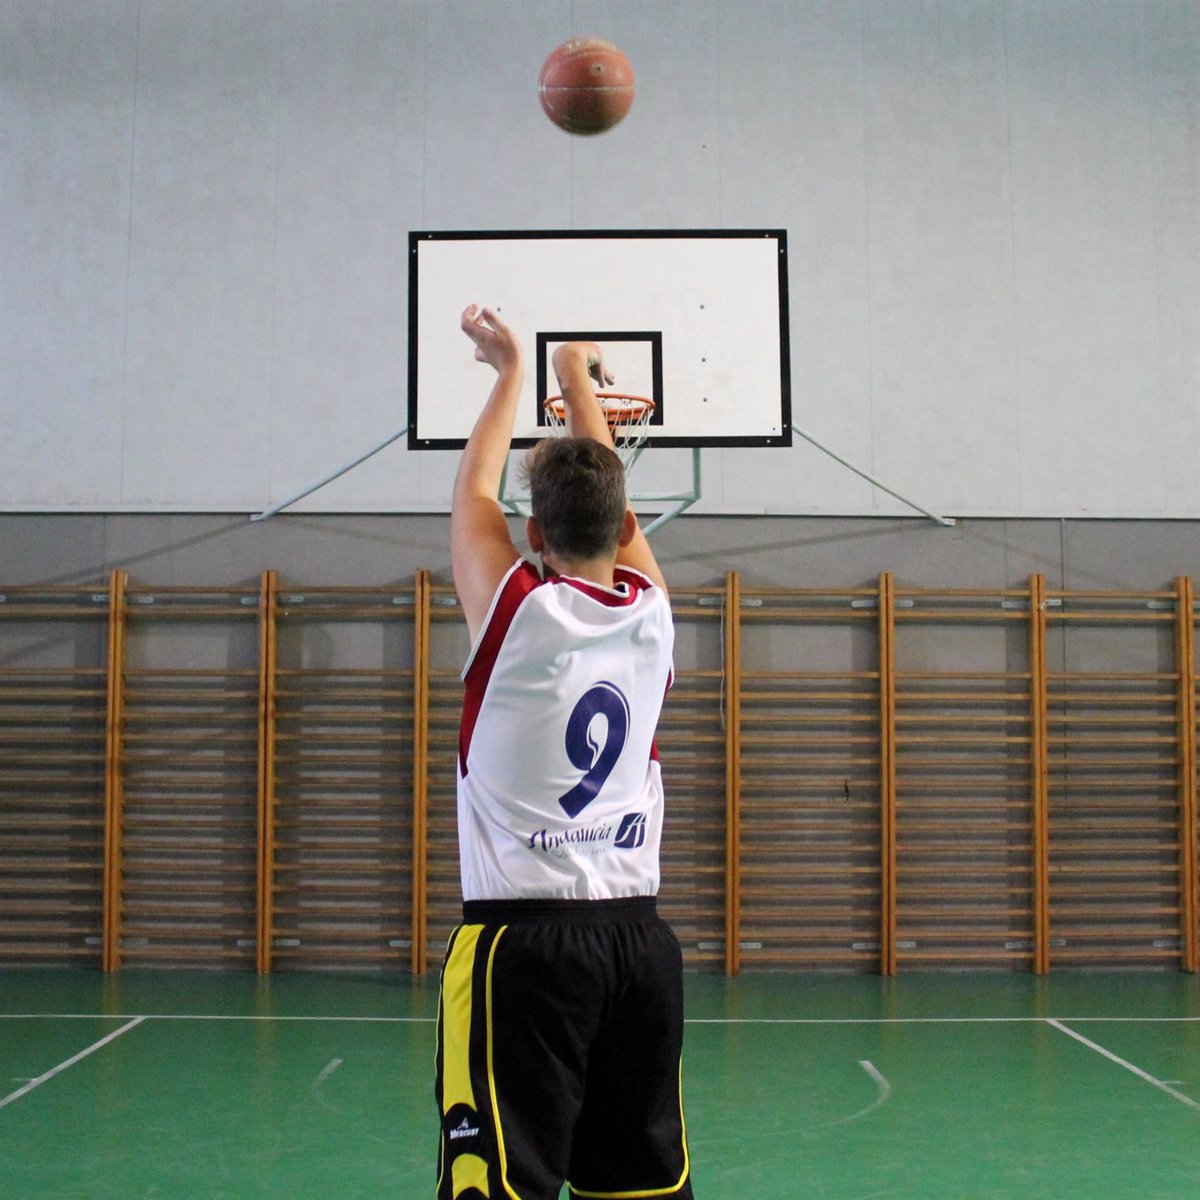 Jugar al baloncesto mejora la visión